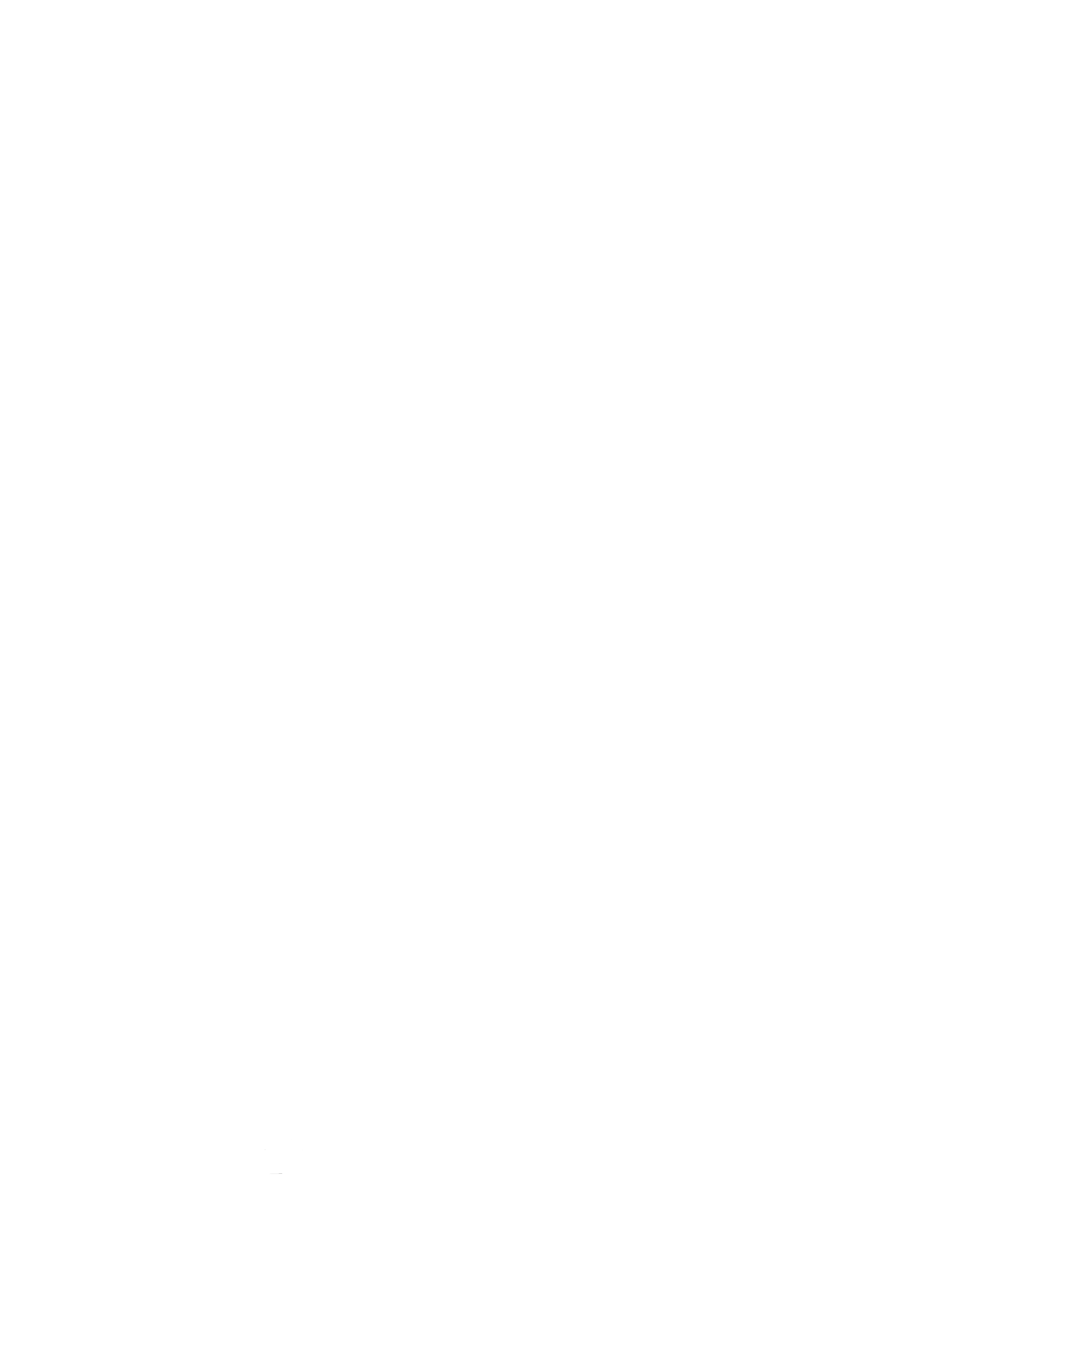 DevilSec_v2_Base.png